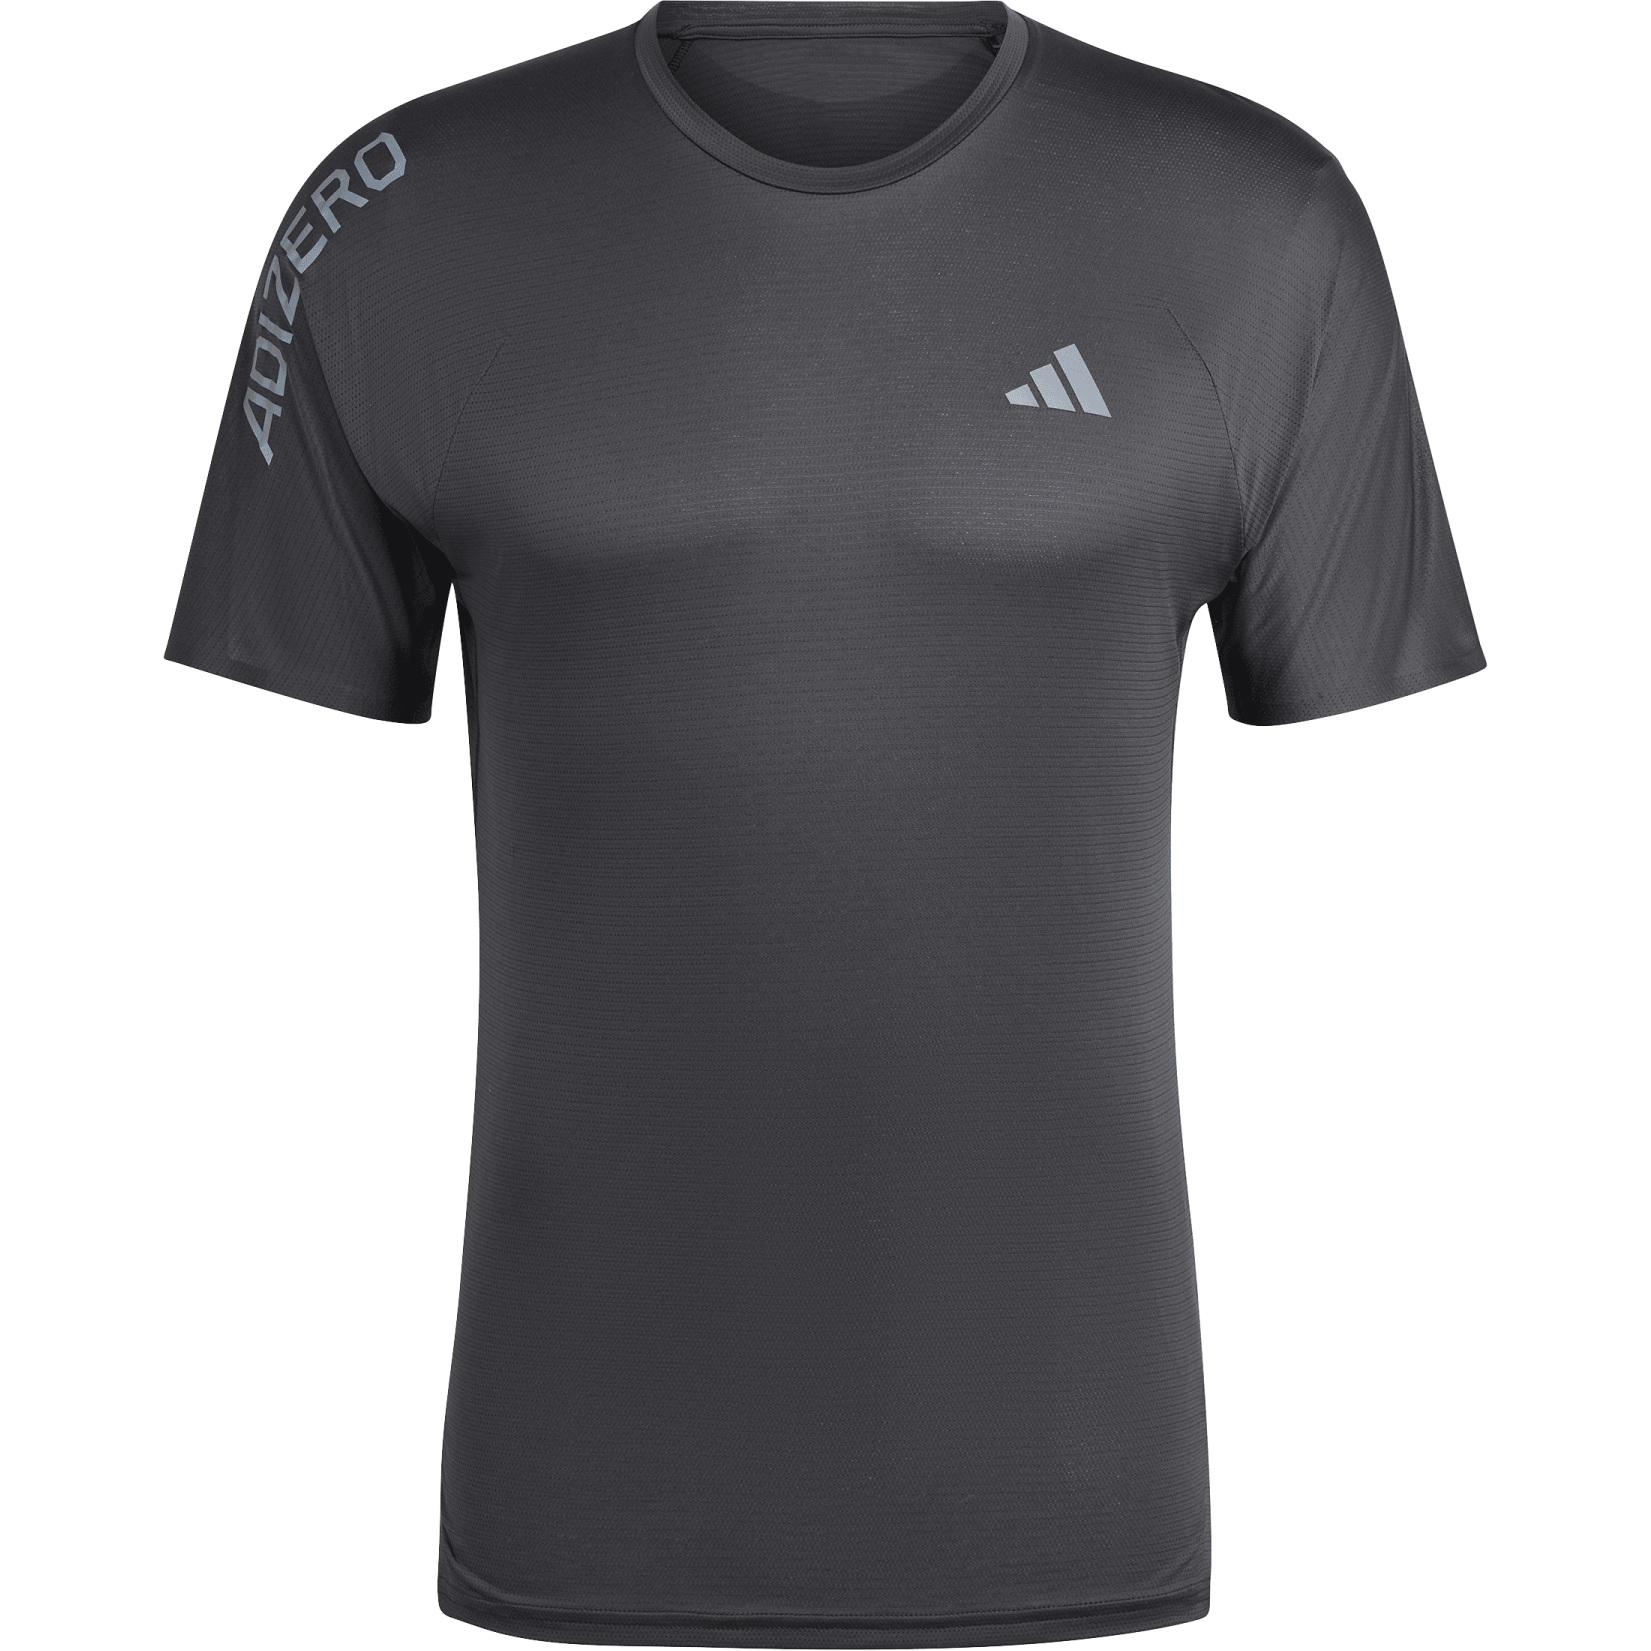 Produktbild von adidas Adizero Running T-Shirt Herren - black/grey six IK9718